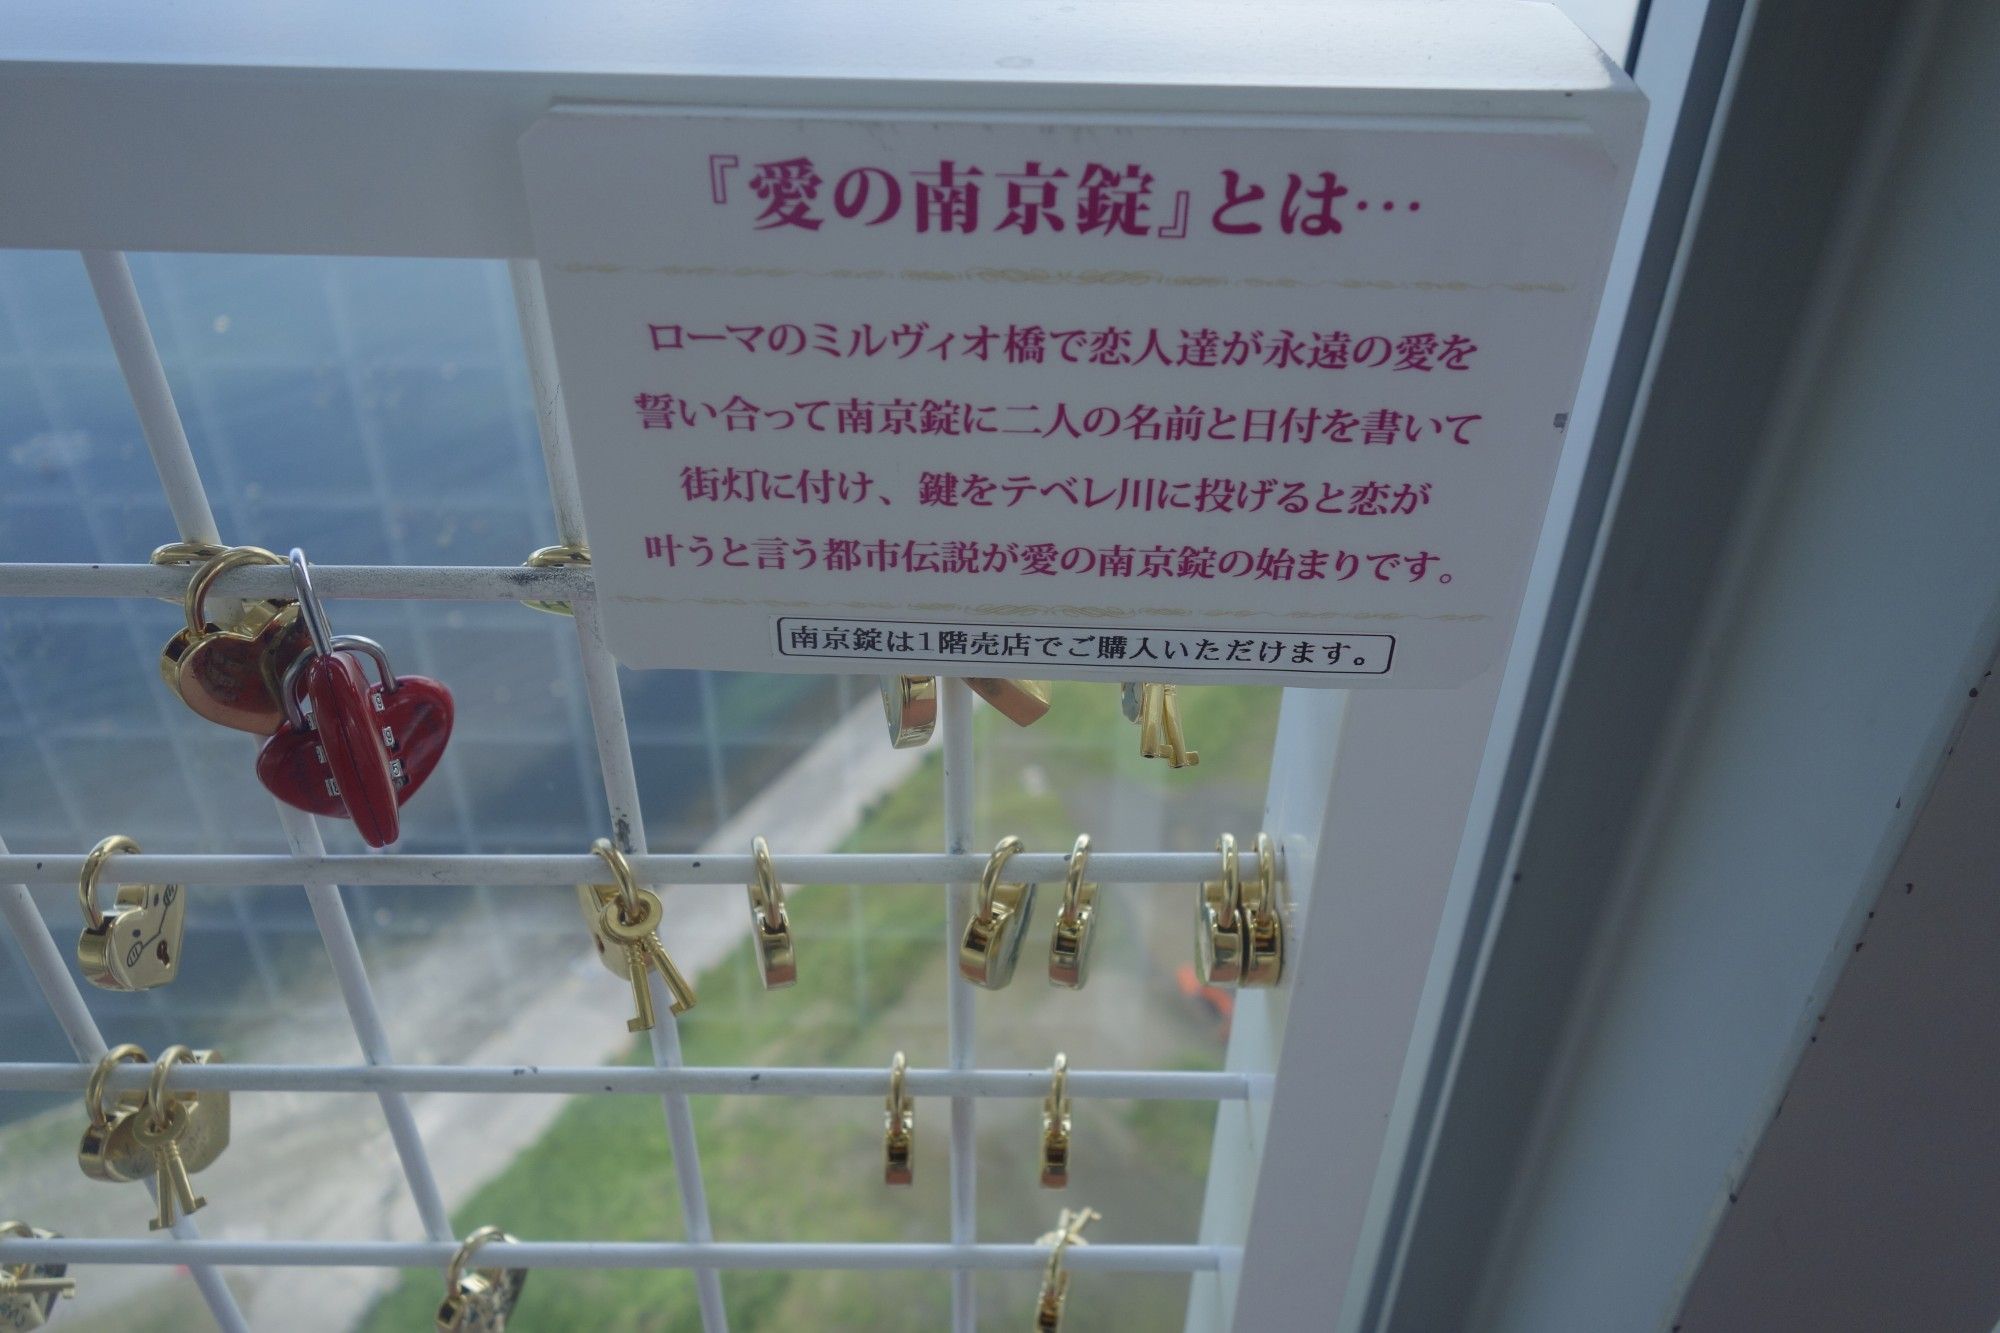 千葉県千葉市中央区 千葉ポートタワー2f 恋人たちの聖地と化している一角があります 日本散策ガイド